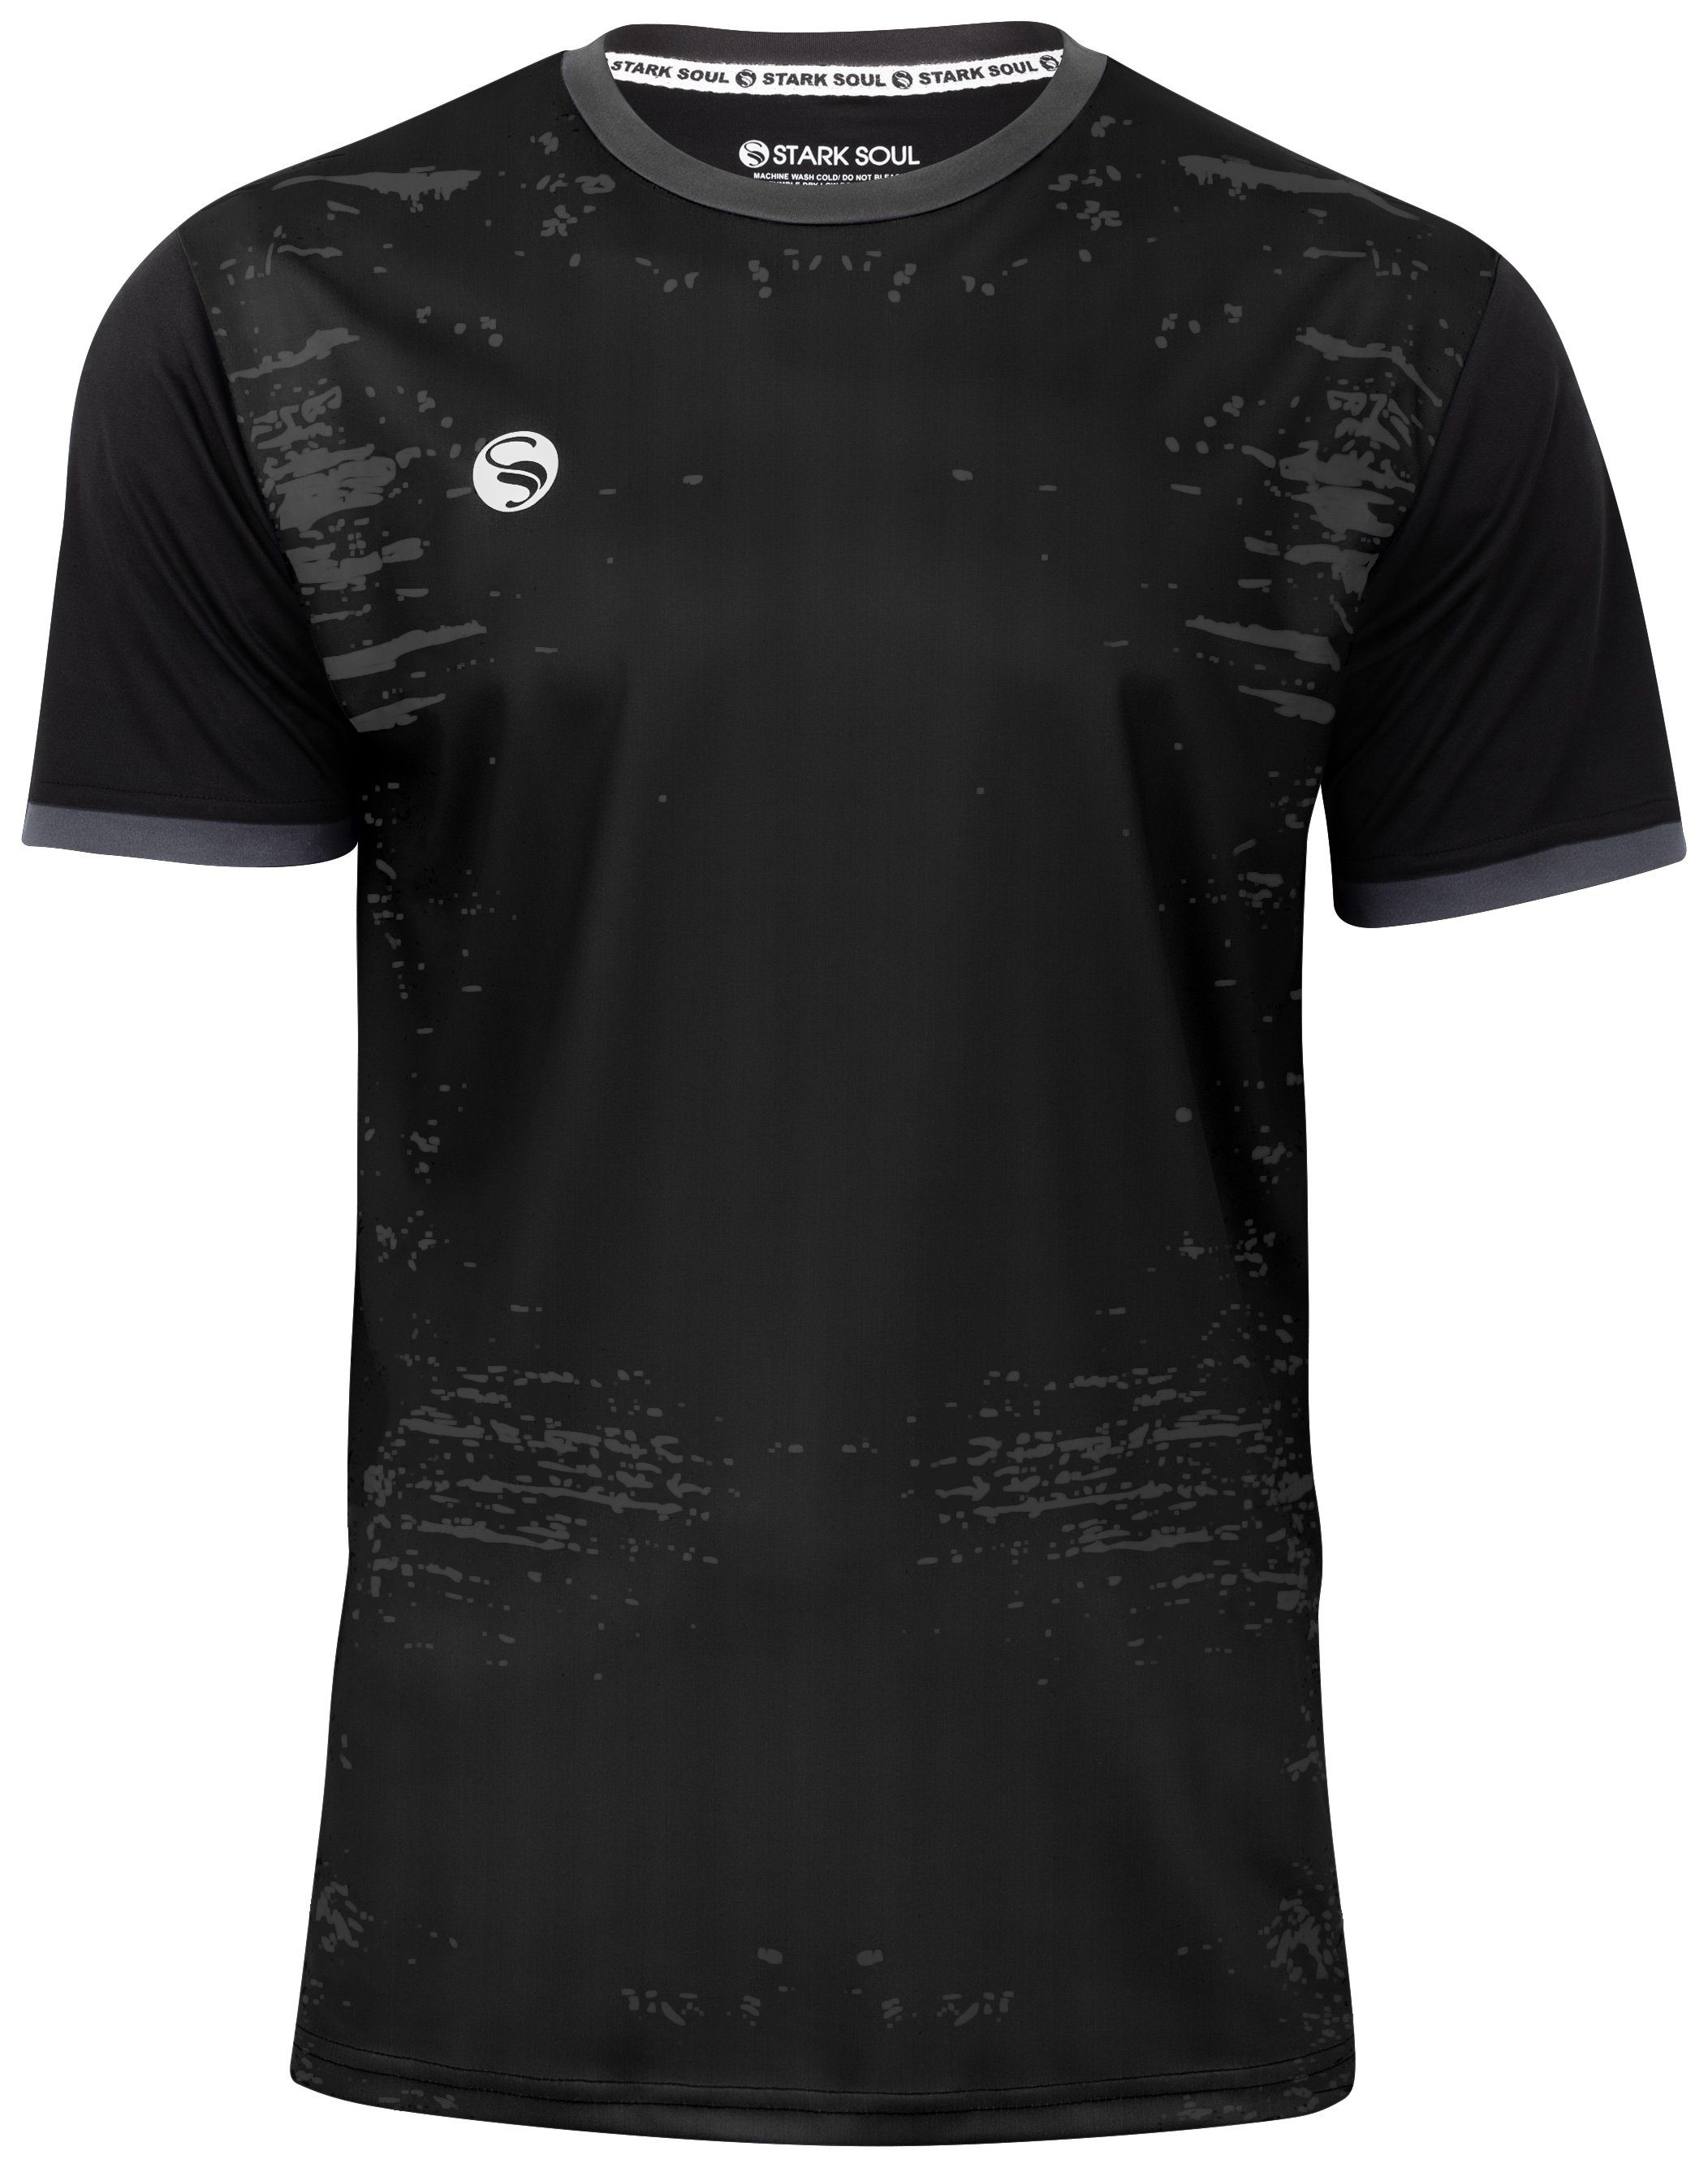 Stark Soul® T-Shirt Trainingsshirt Trikot "Stained"- T-Shirt, Herren Sport-Shirt, Kurzarm Schwarz